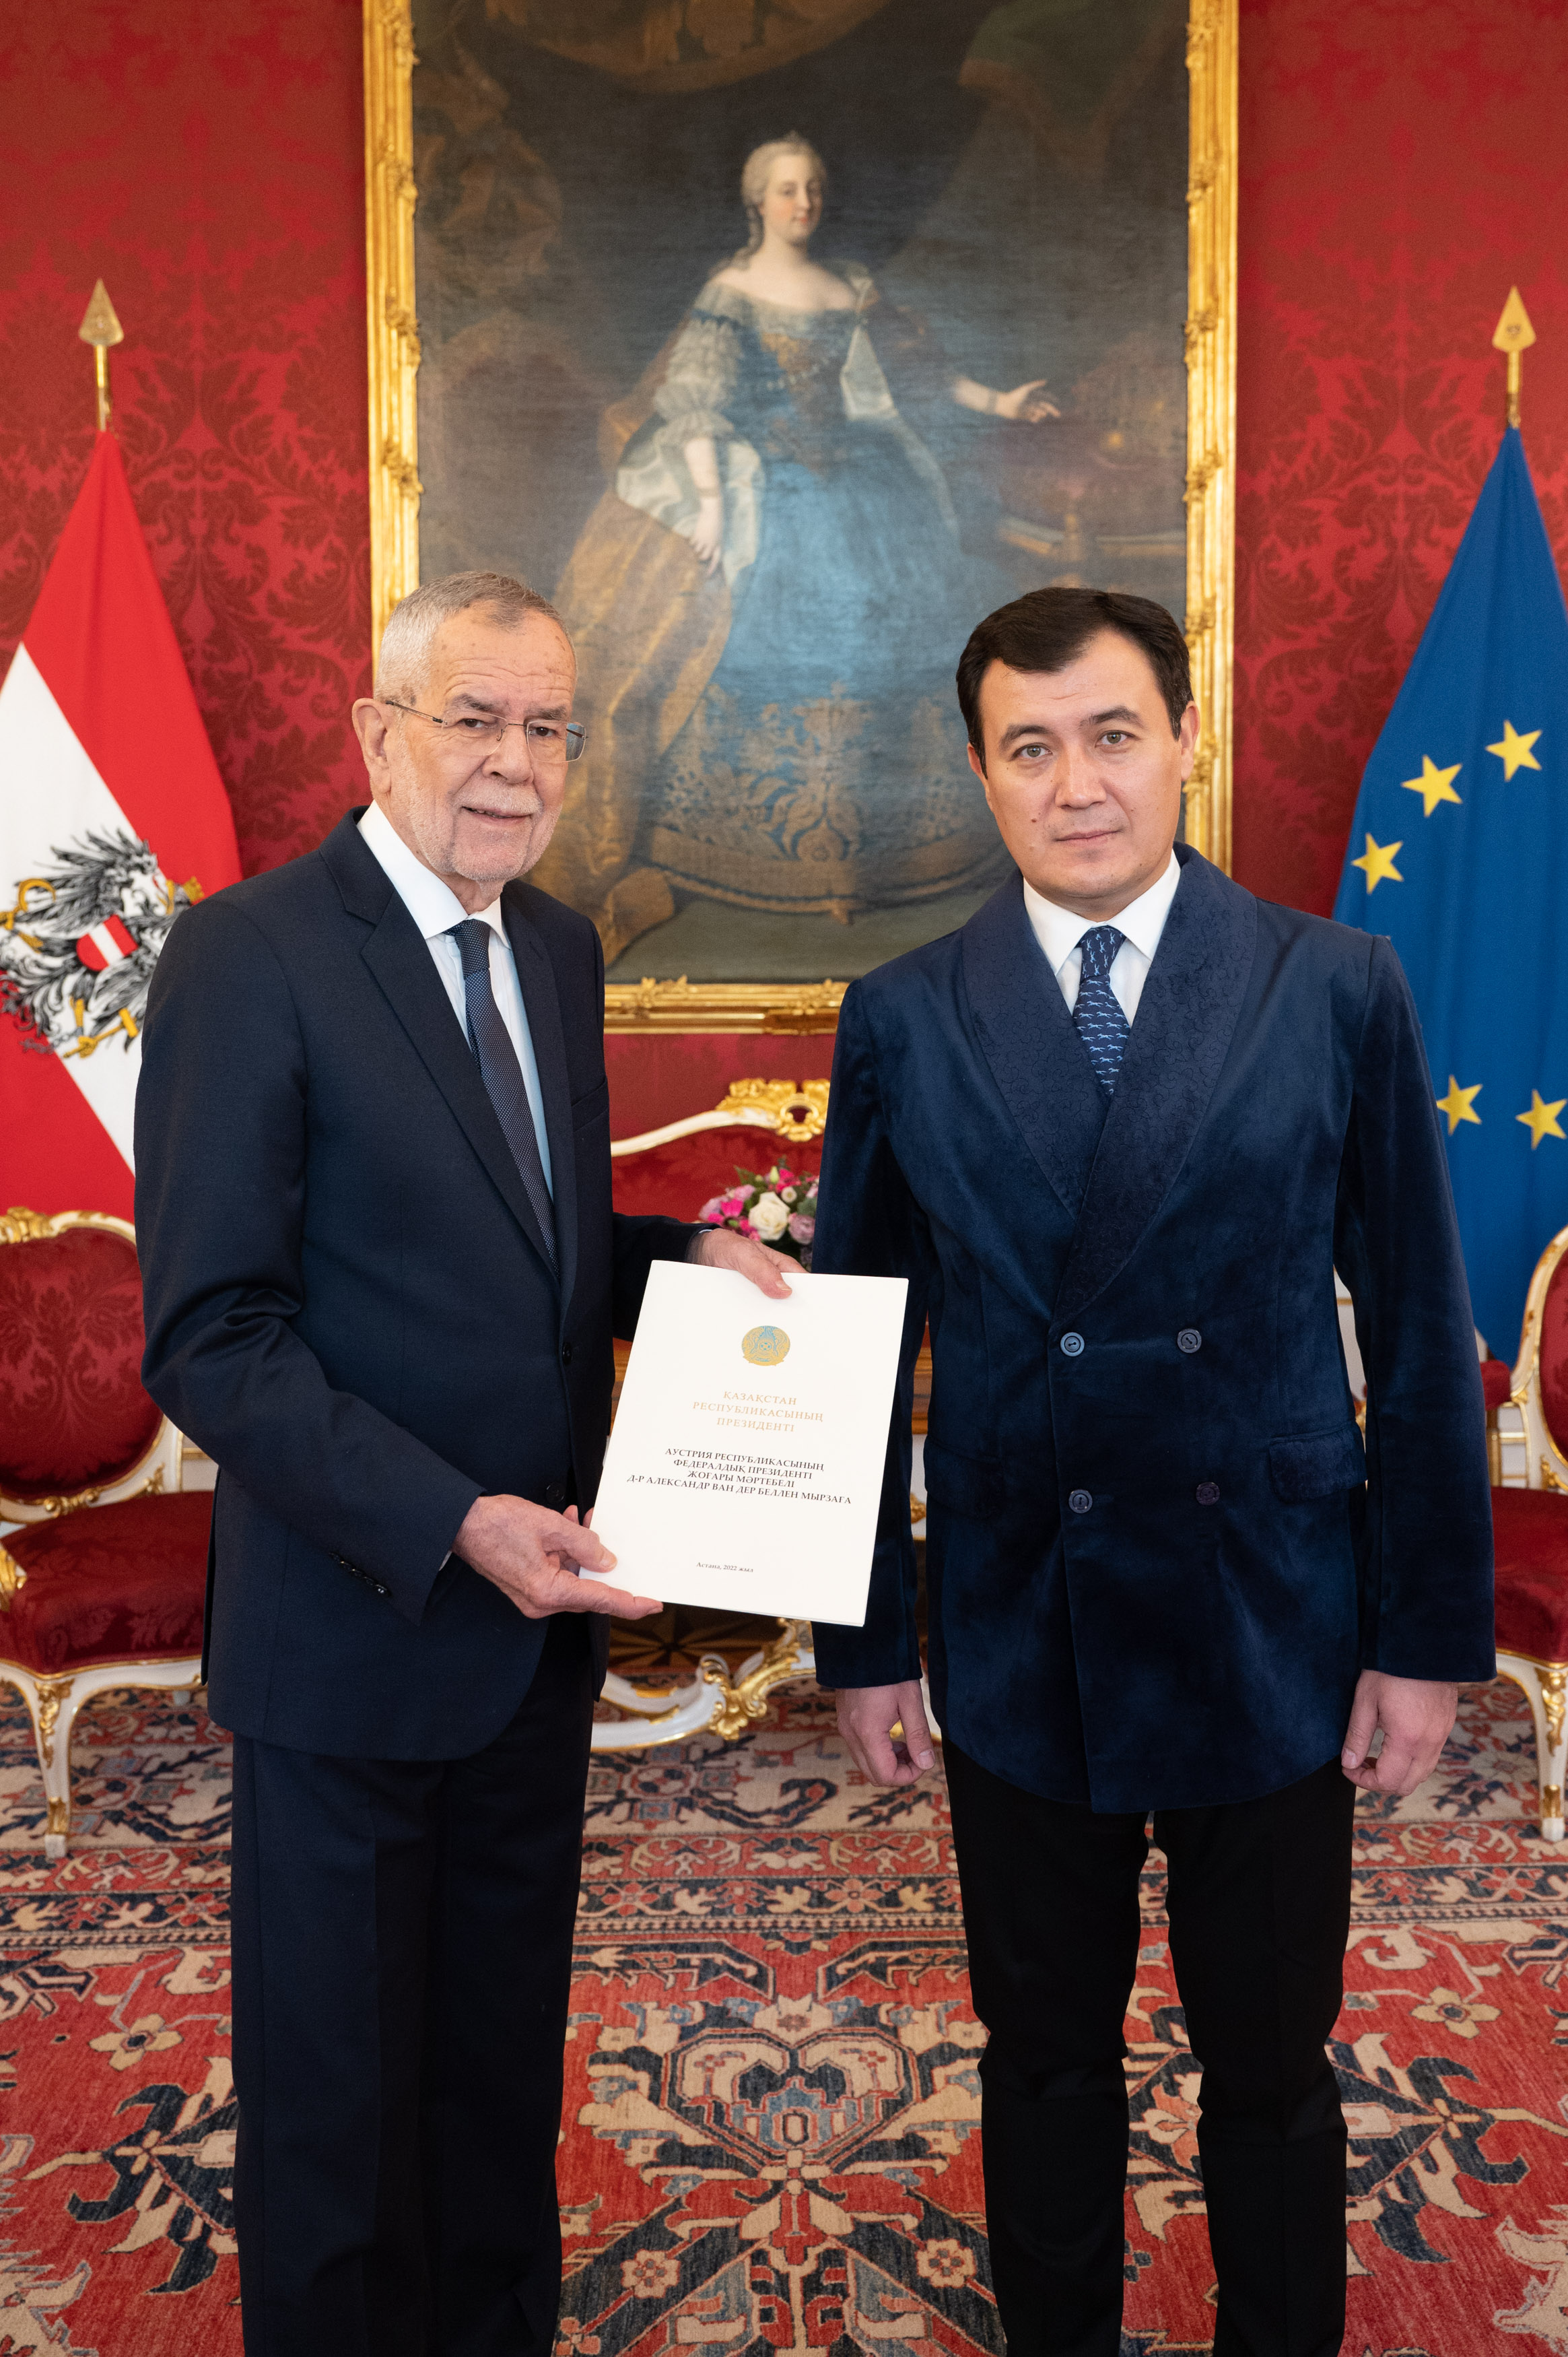 Botschafter der Republik Kasachstan überreichte dem Bundespräsidenten der Republik Österreich das Beglaubigungsschreiben